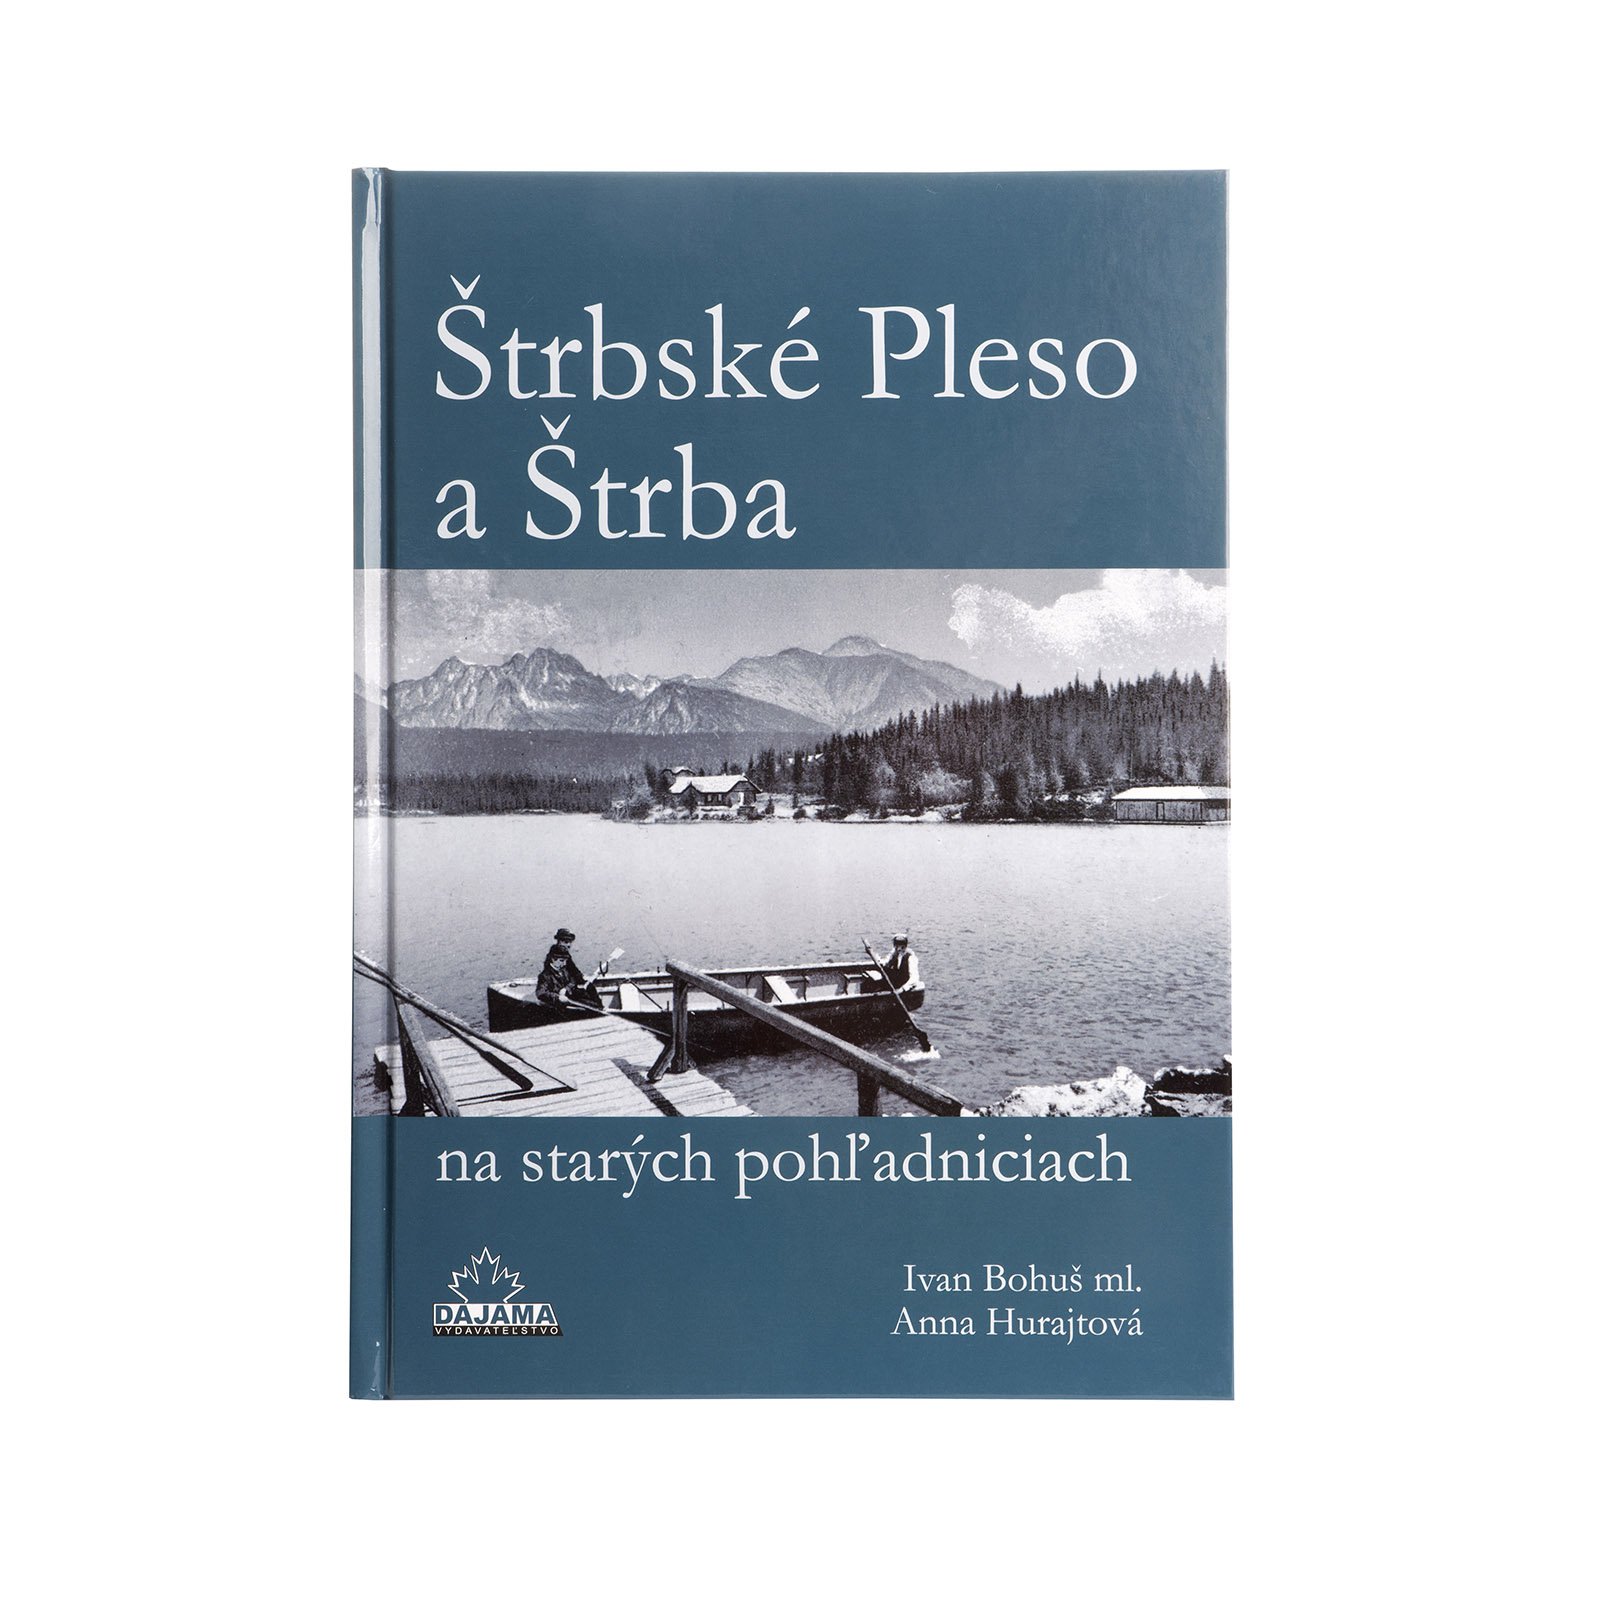 Štrbské Pleso and Štrba on Old Picture Postcards (Štrbské Pleso a Štrba na starých pohľadniciach)